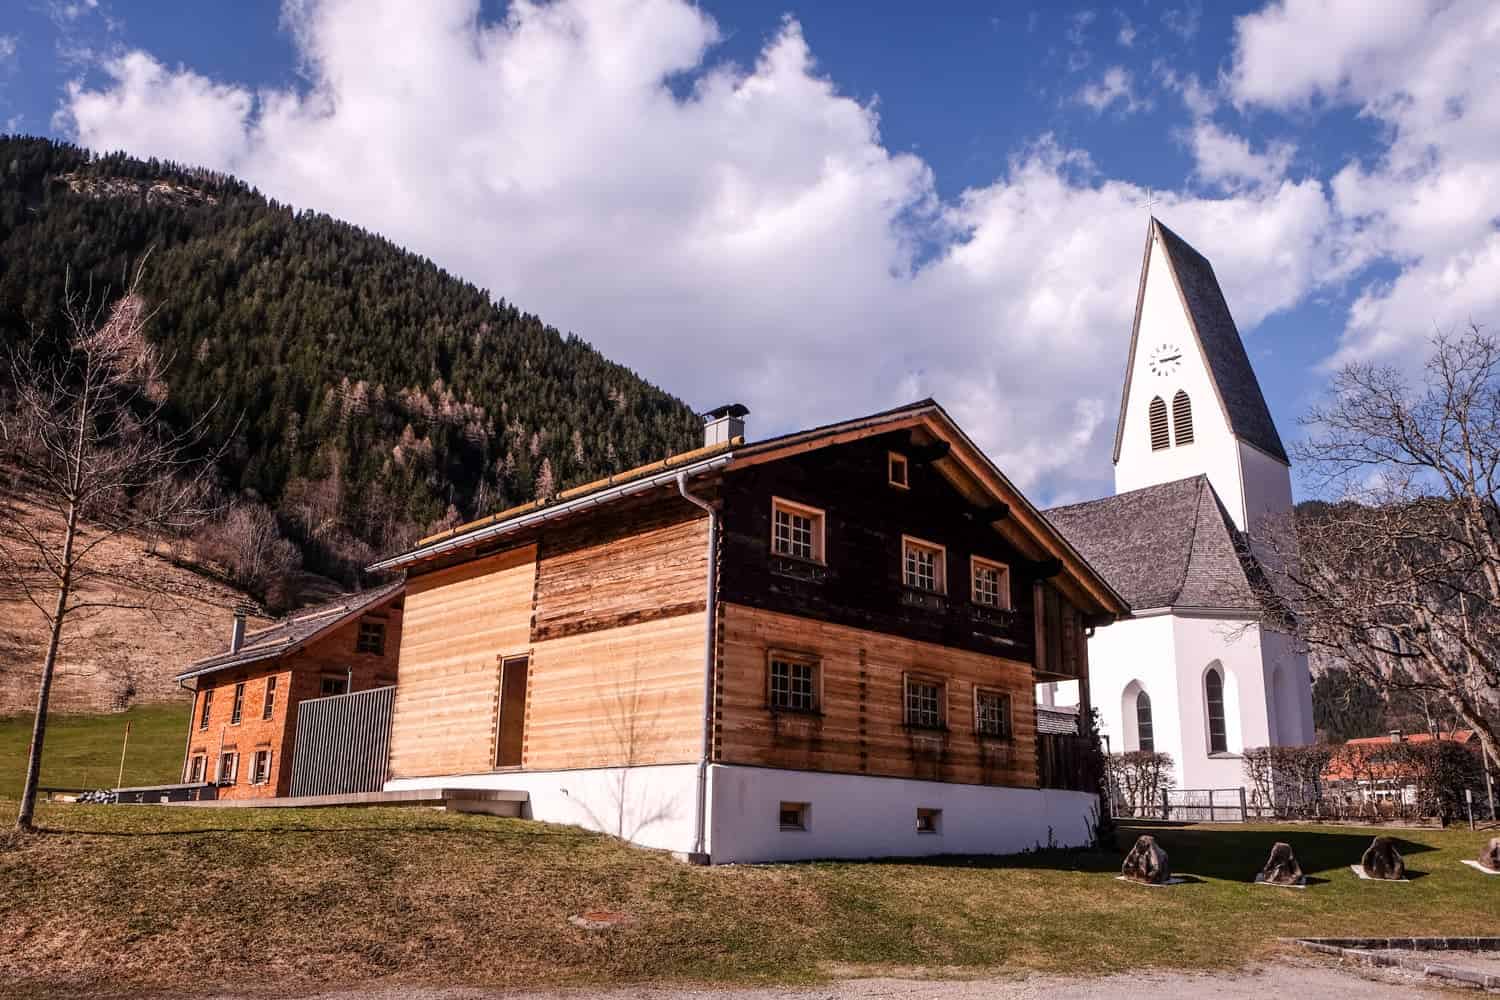 Modern architecture style in Brand village in Vorarlberg, Austria